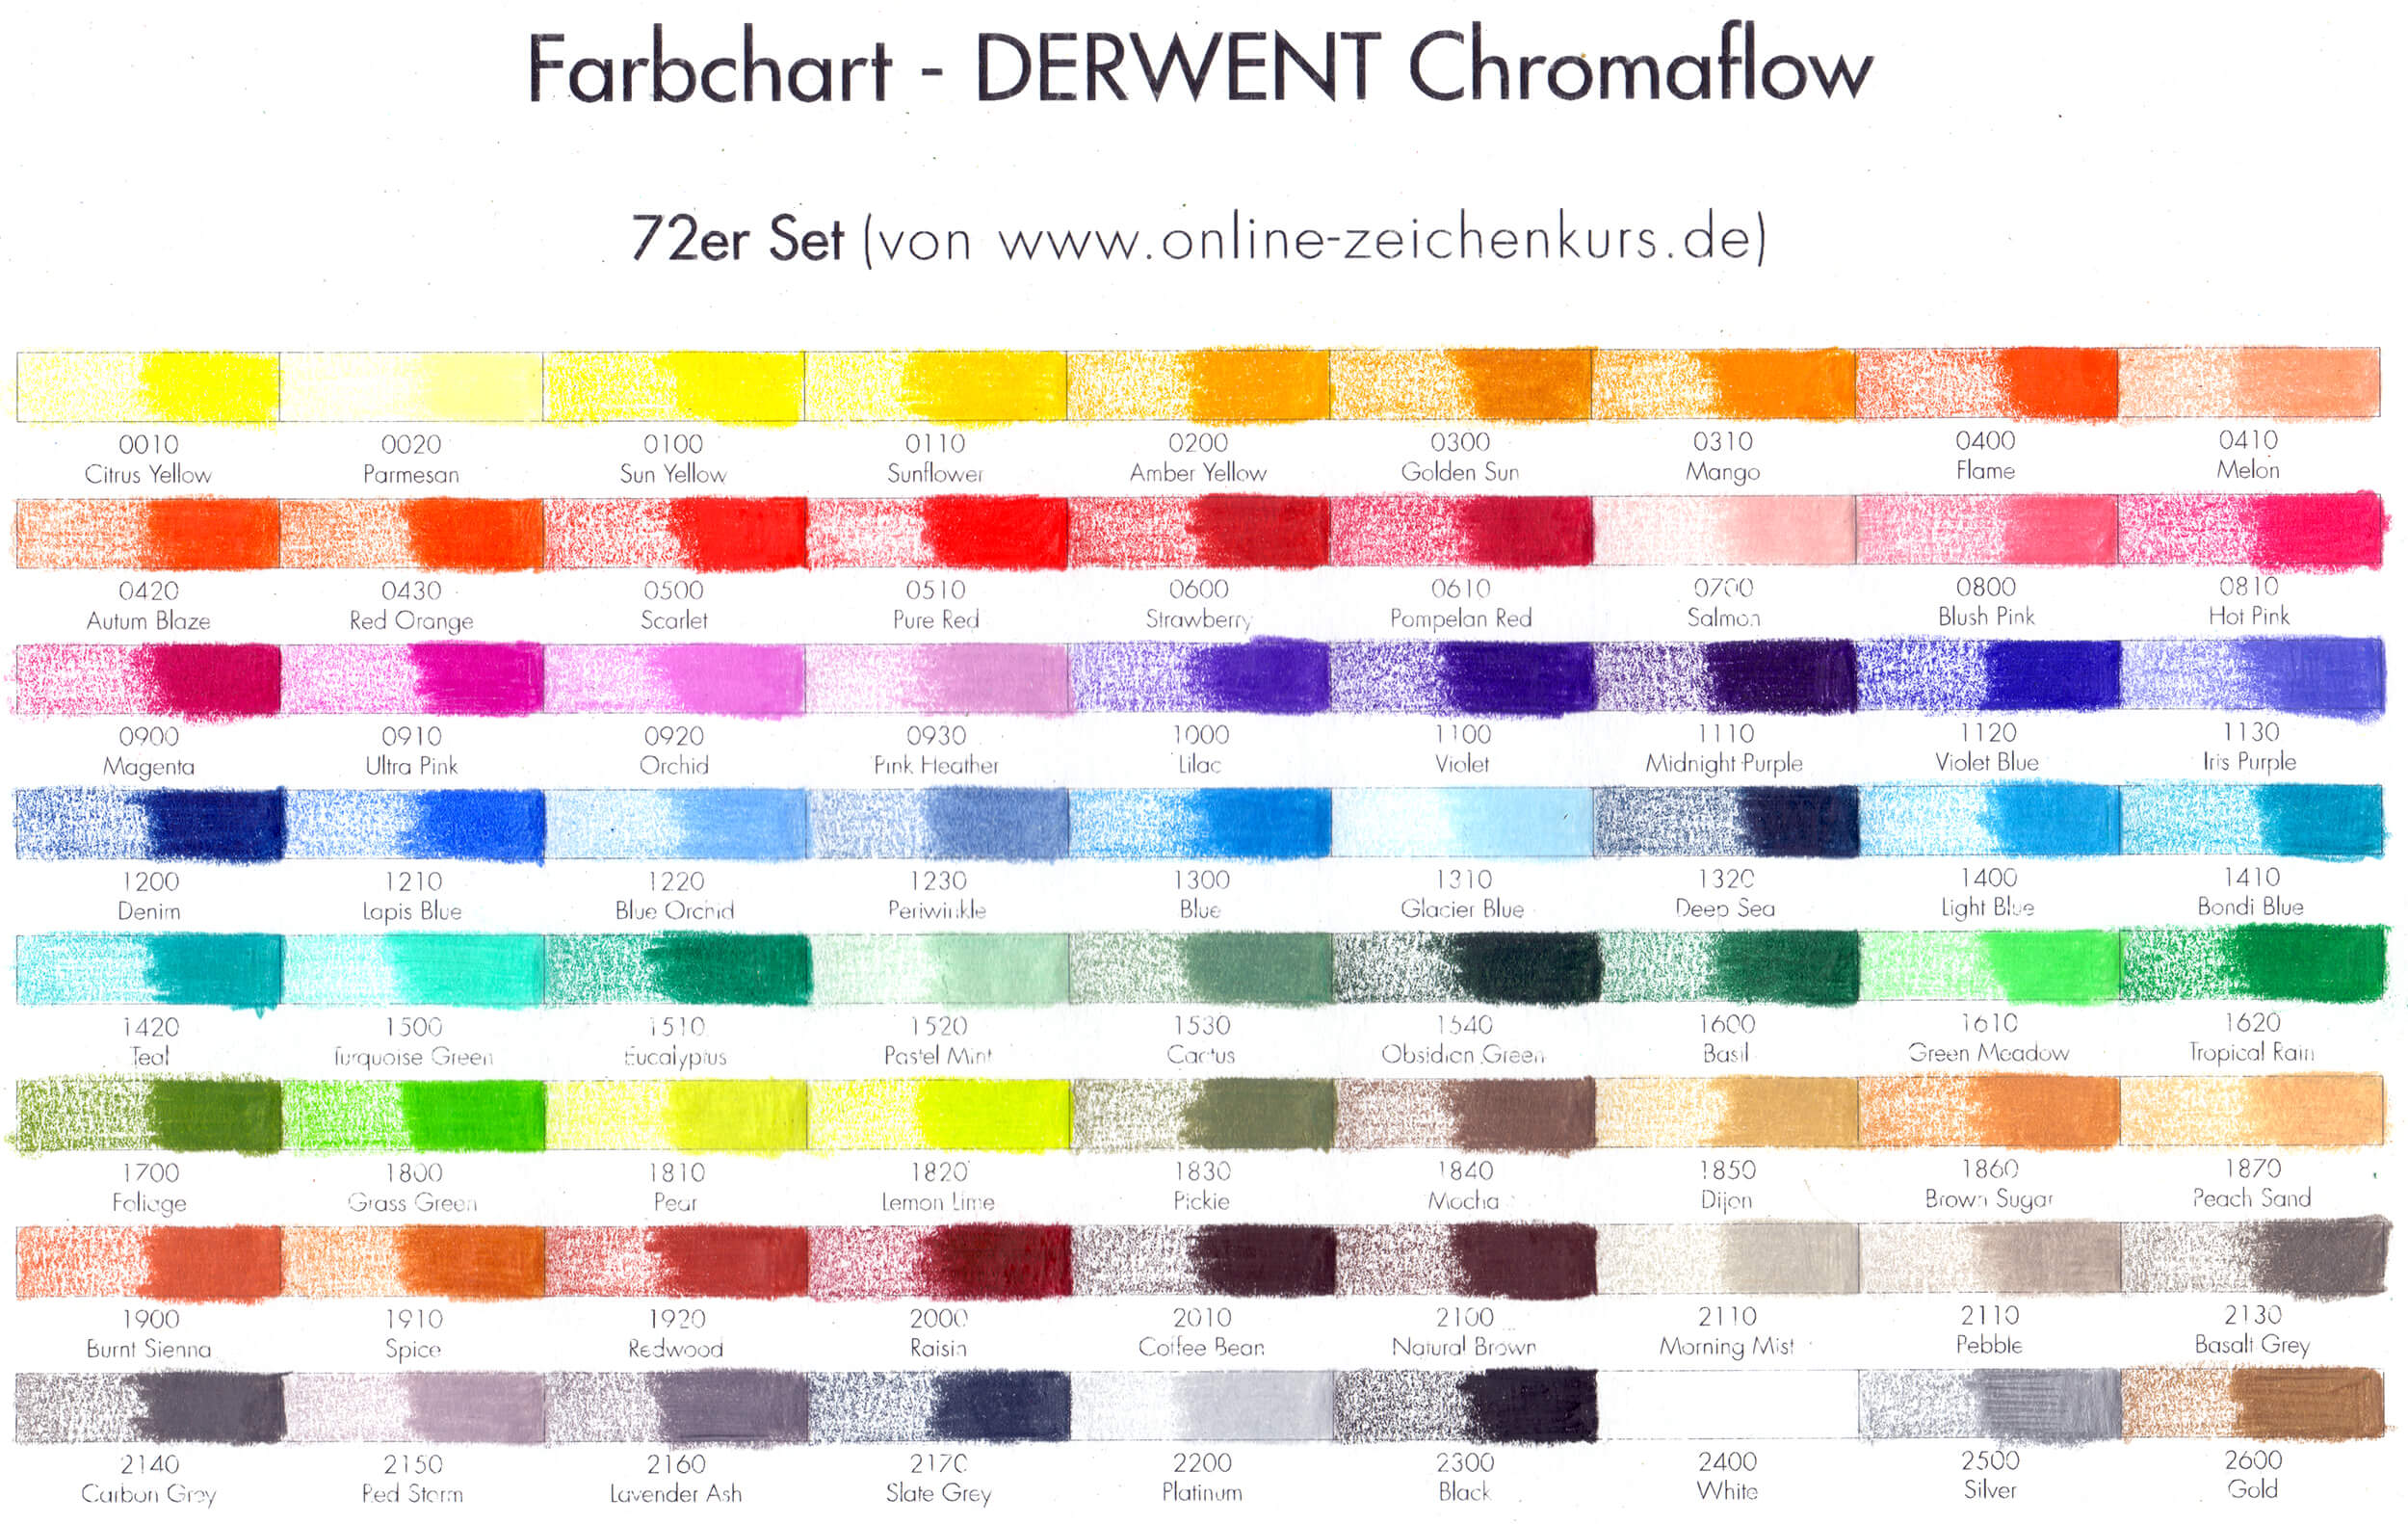 DERWENT Chromaflow 72er Set Farbchart ausgefüllt